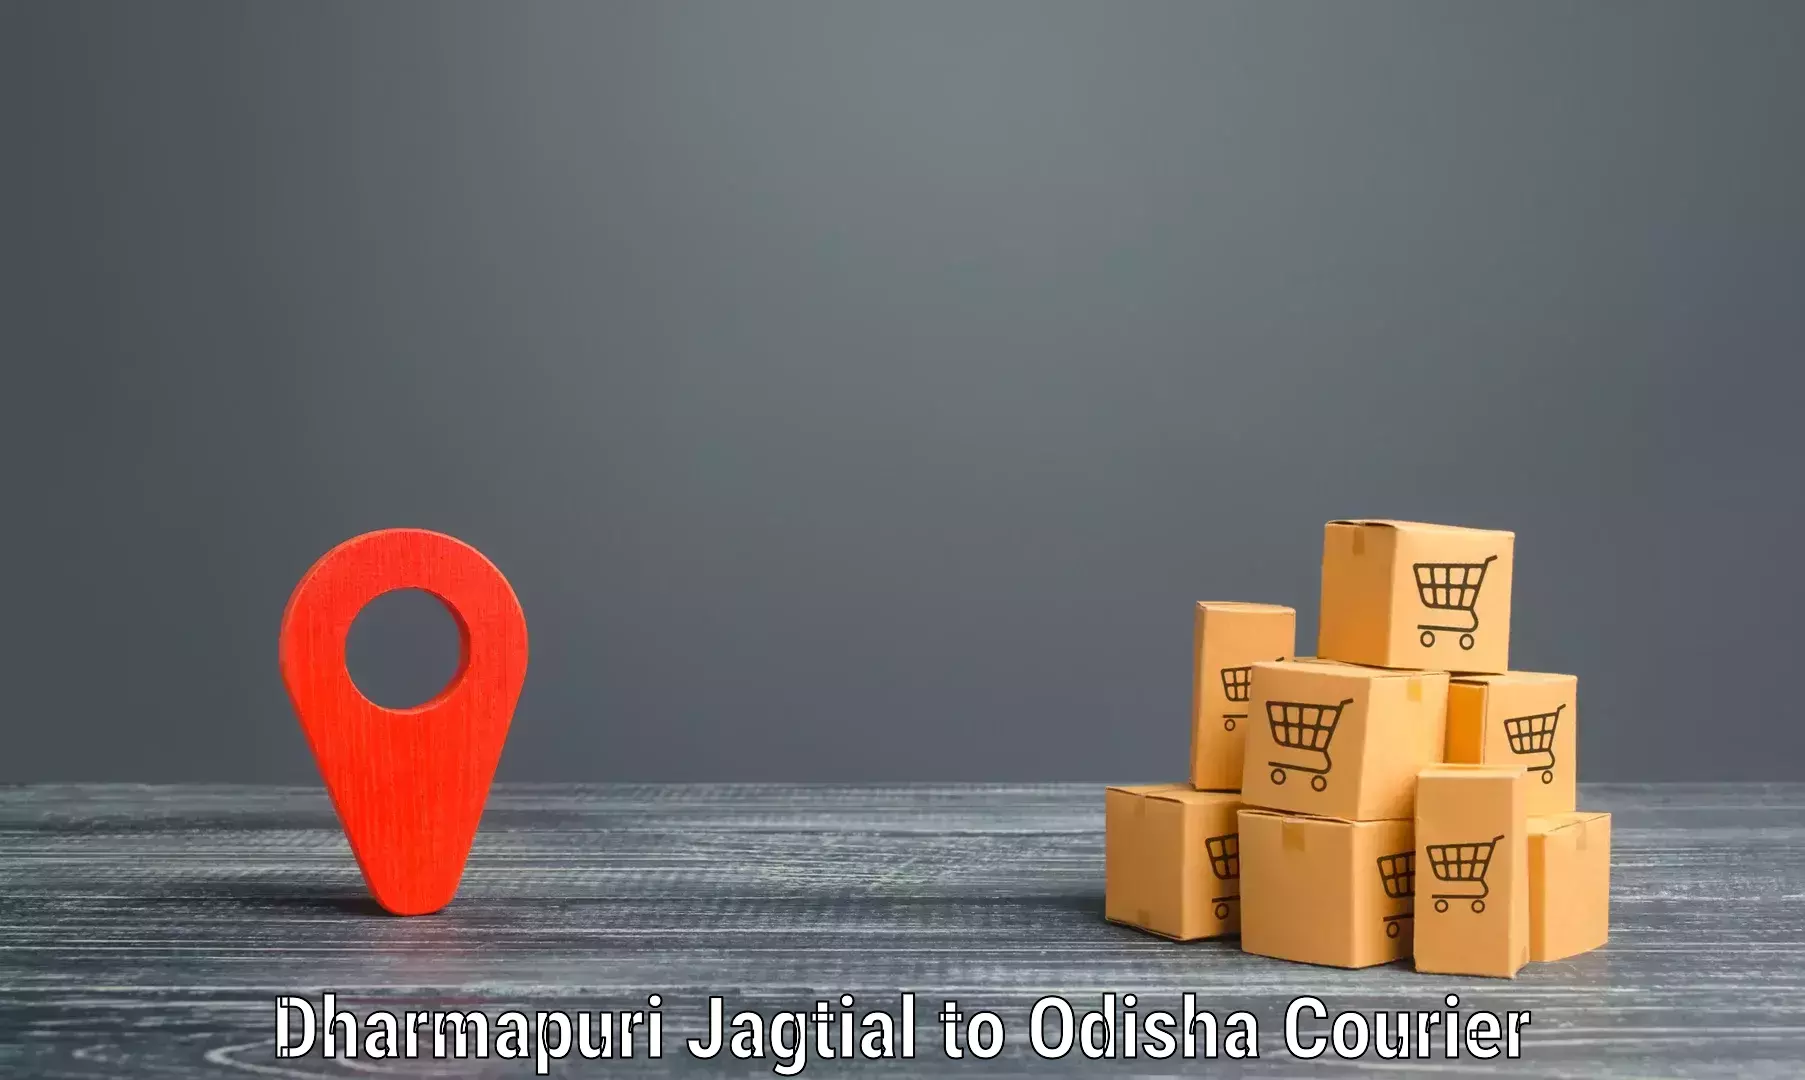 Express delivery capabilities Dharmapuri Jagtial to Khordha